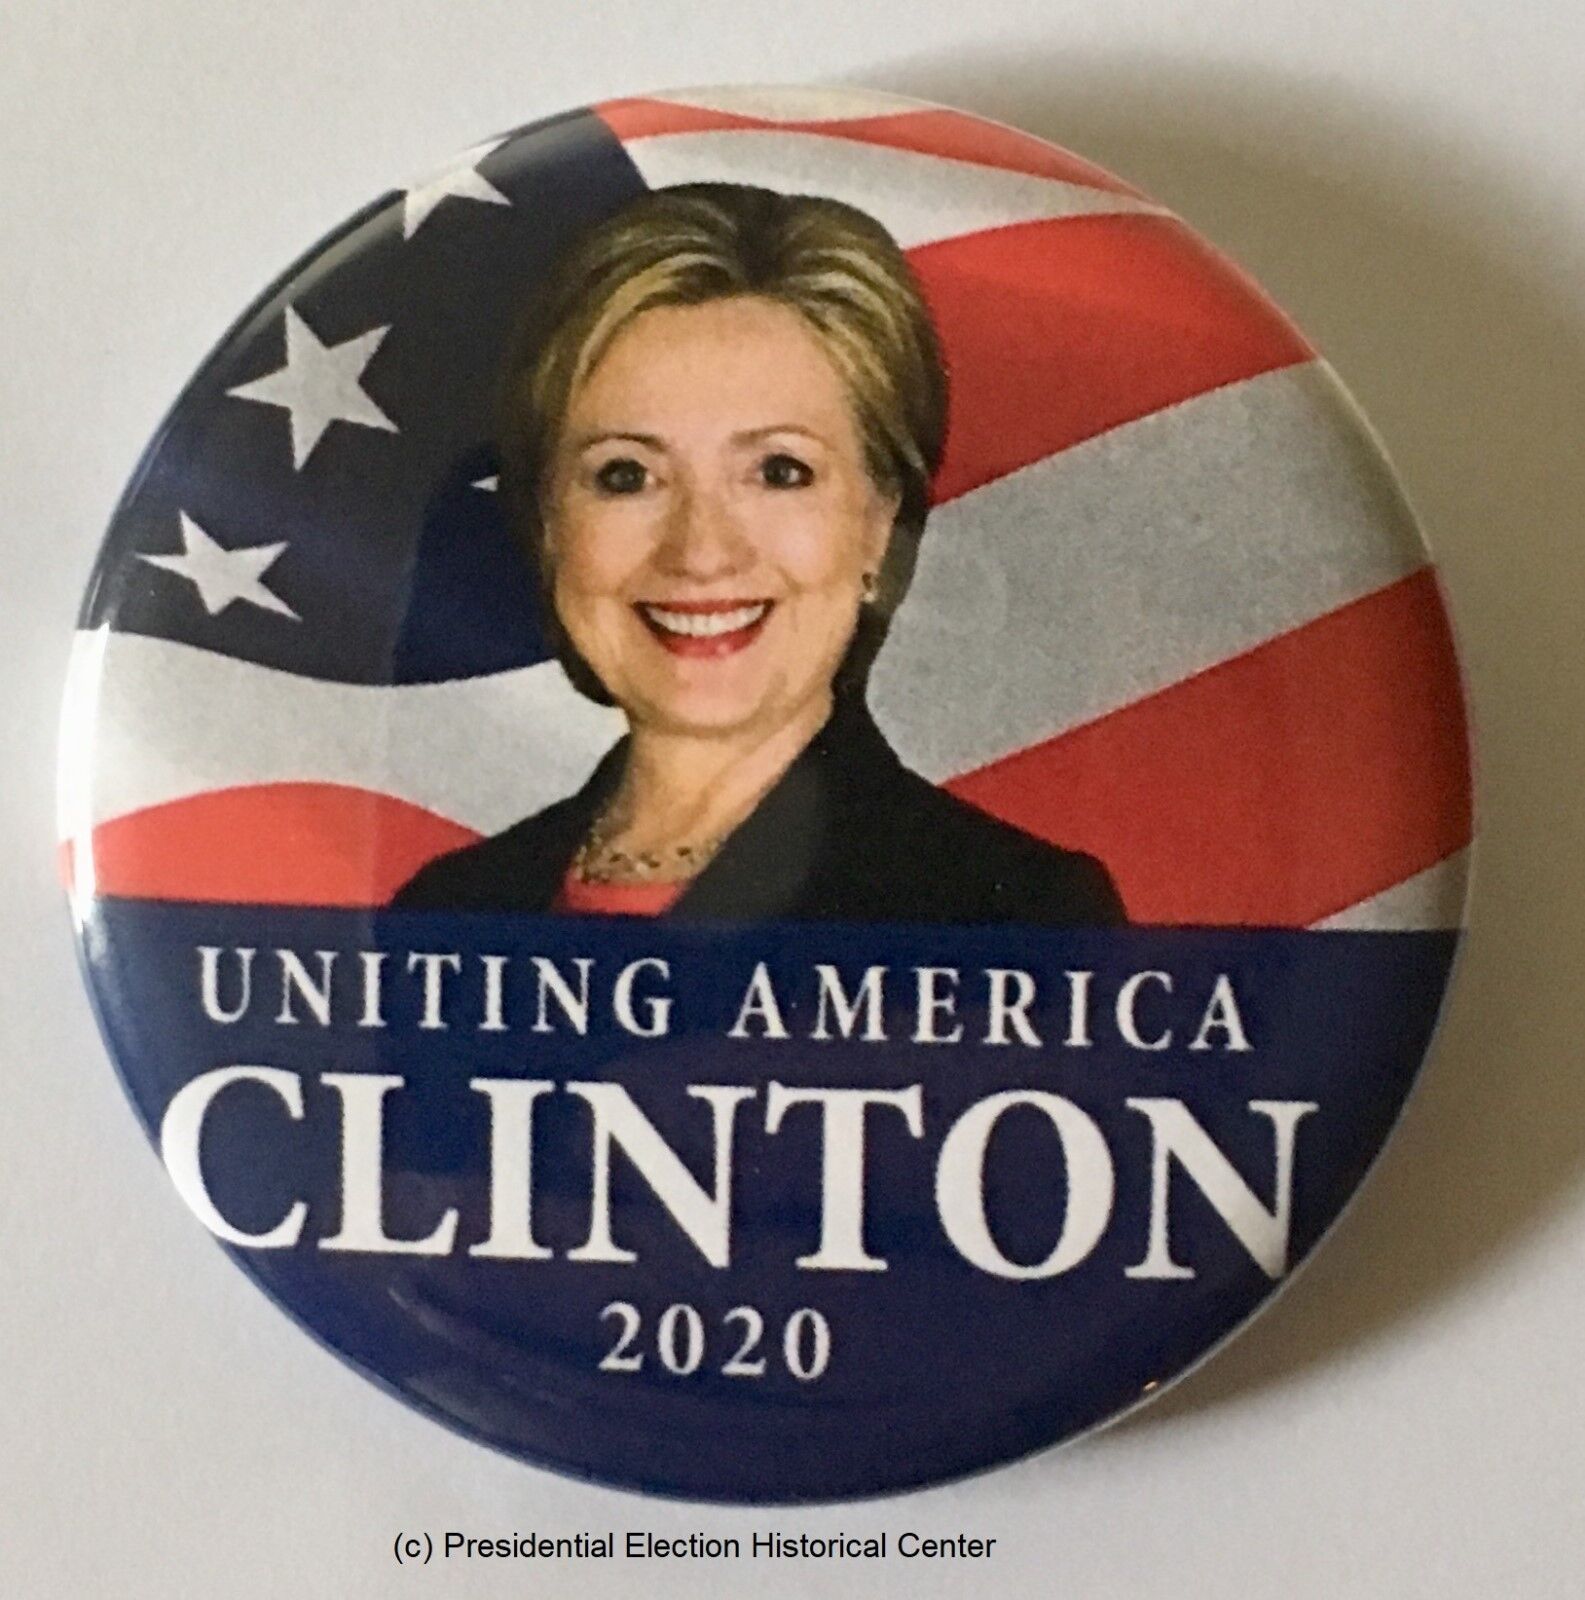 Hillary Clinton 2020 Campaign Button (HCLINTON-702)